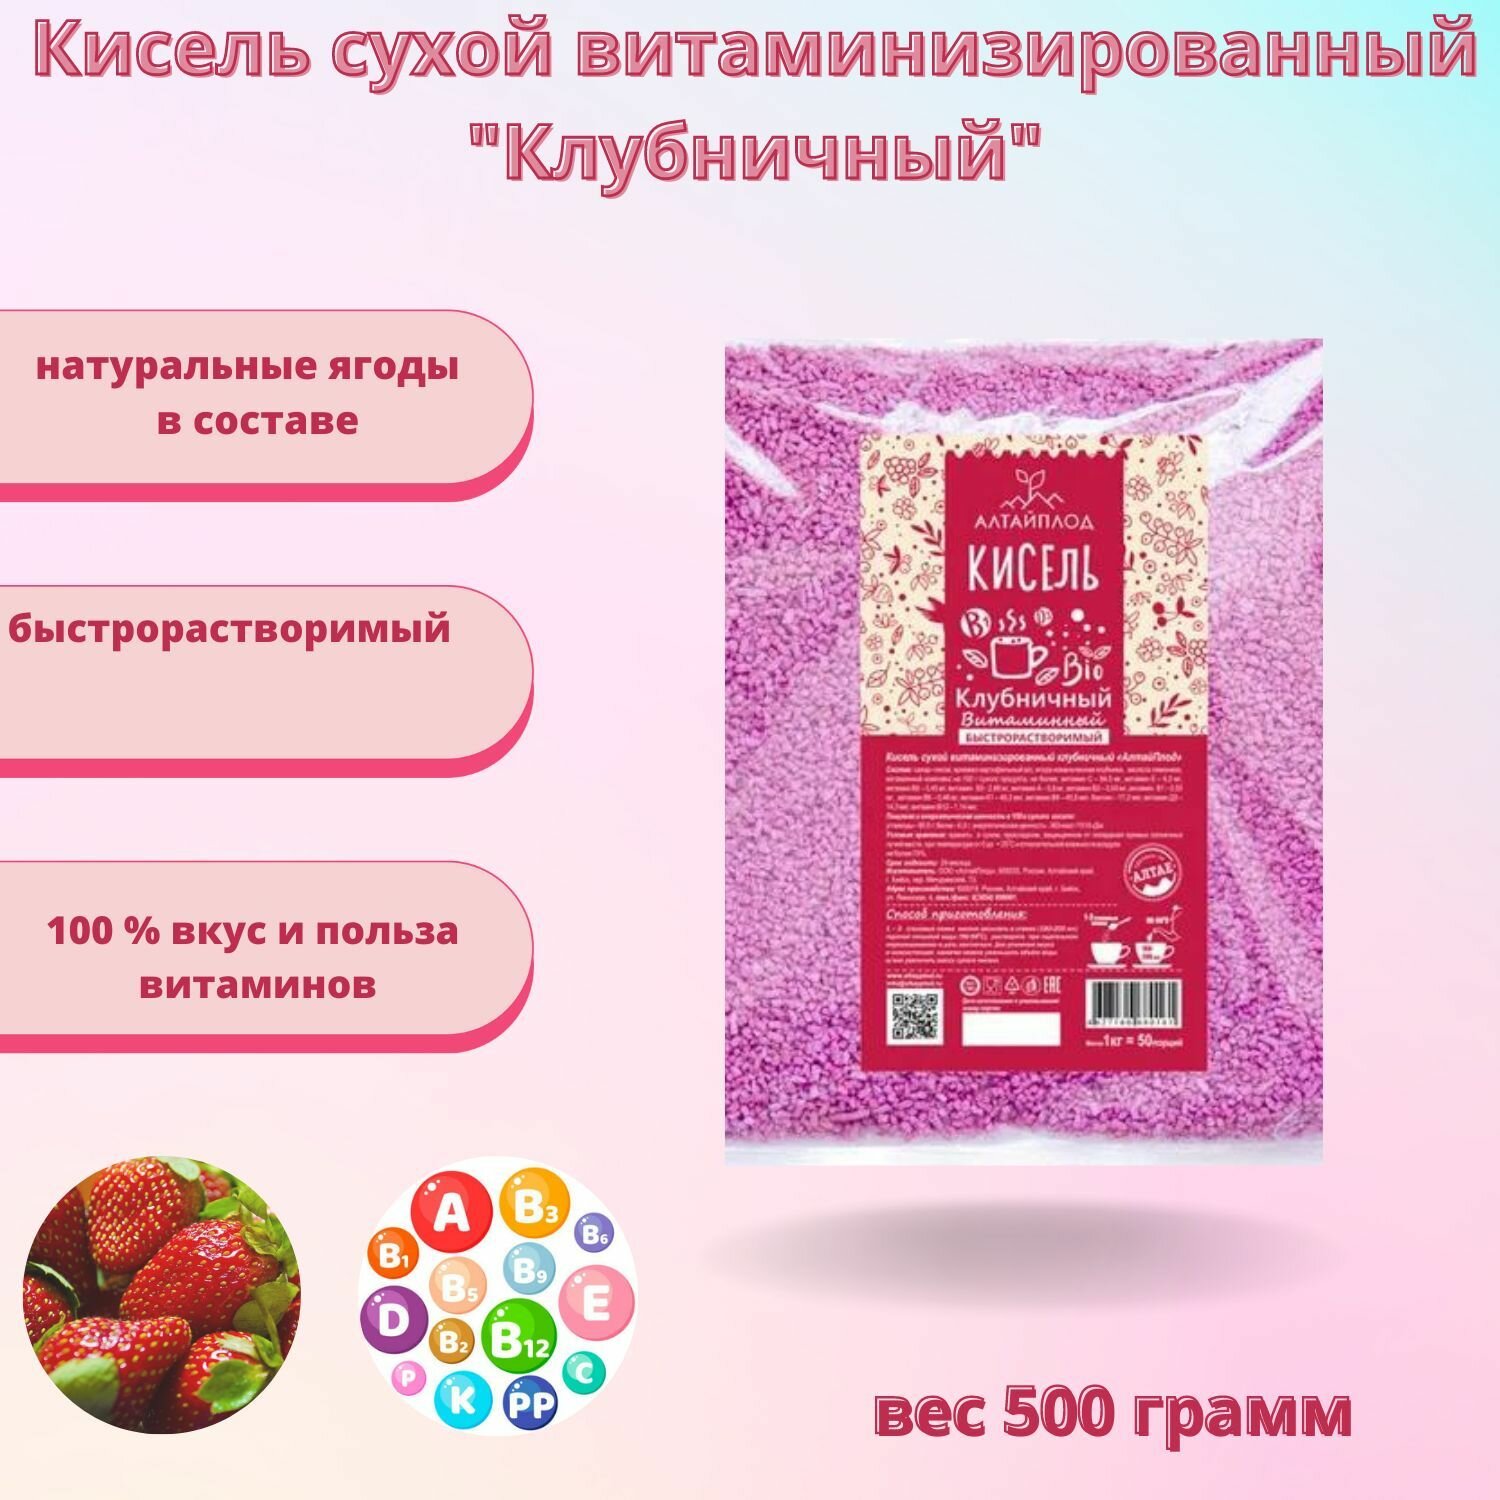 Кисель сухой витаминизированный "Клубничный" 500 грамм АлтайПлод